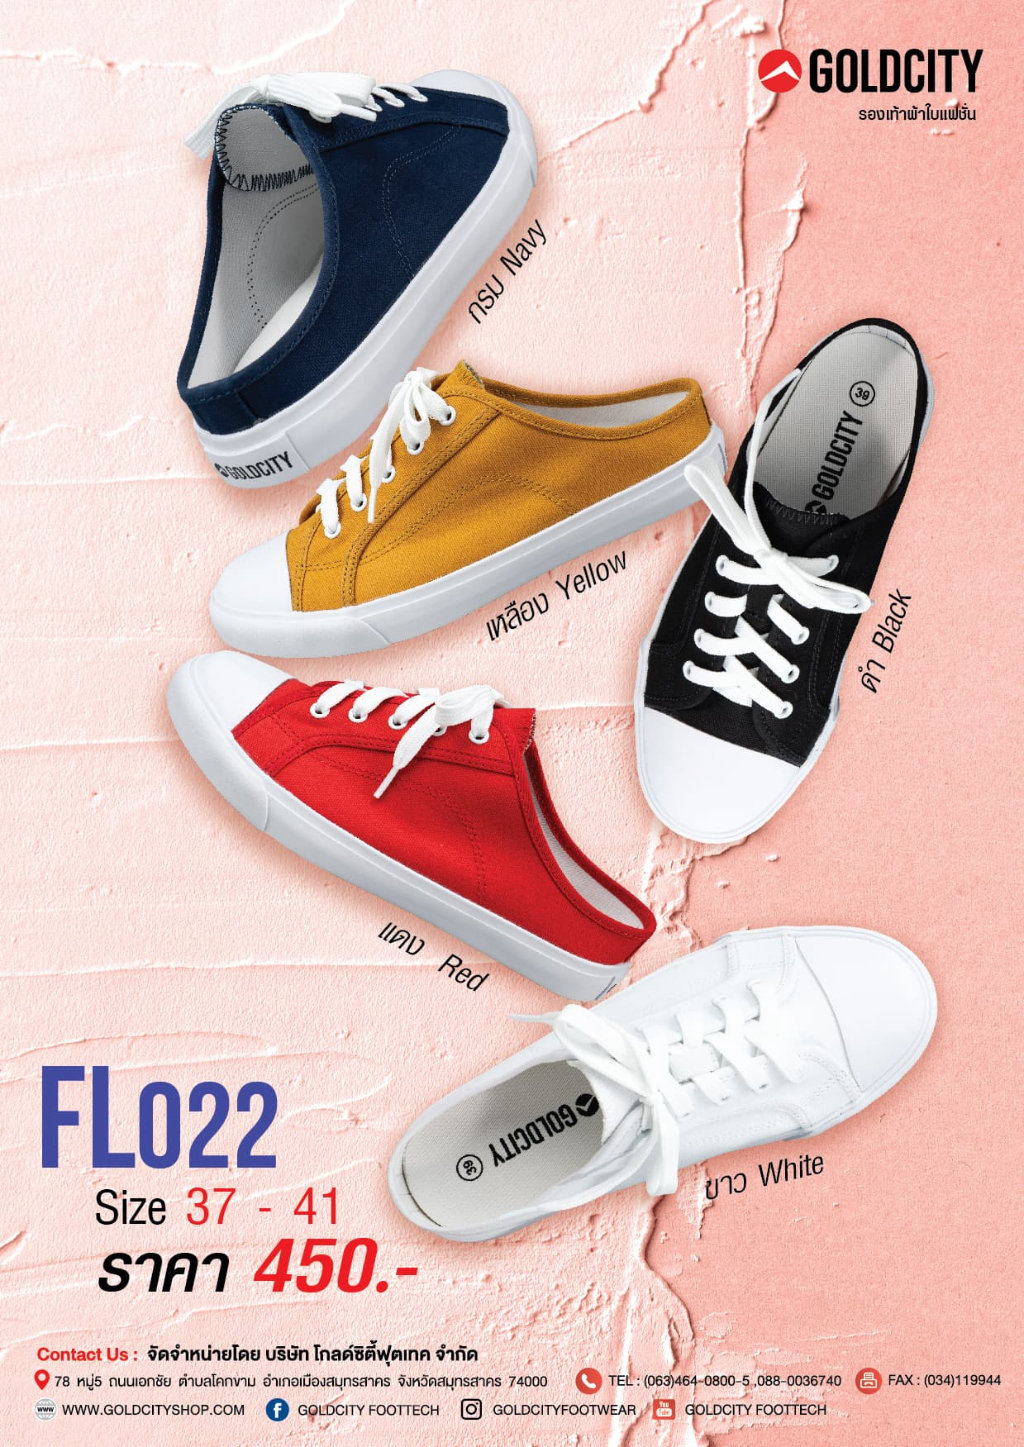 ภาพอธิบายเพิ่มเติมของ GOLDCITY รุ่น FL022 รองเท้าผ้าใบแฟชั่น รองเท้าผ้าใบ โกลด์ซิตี้